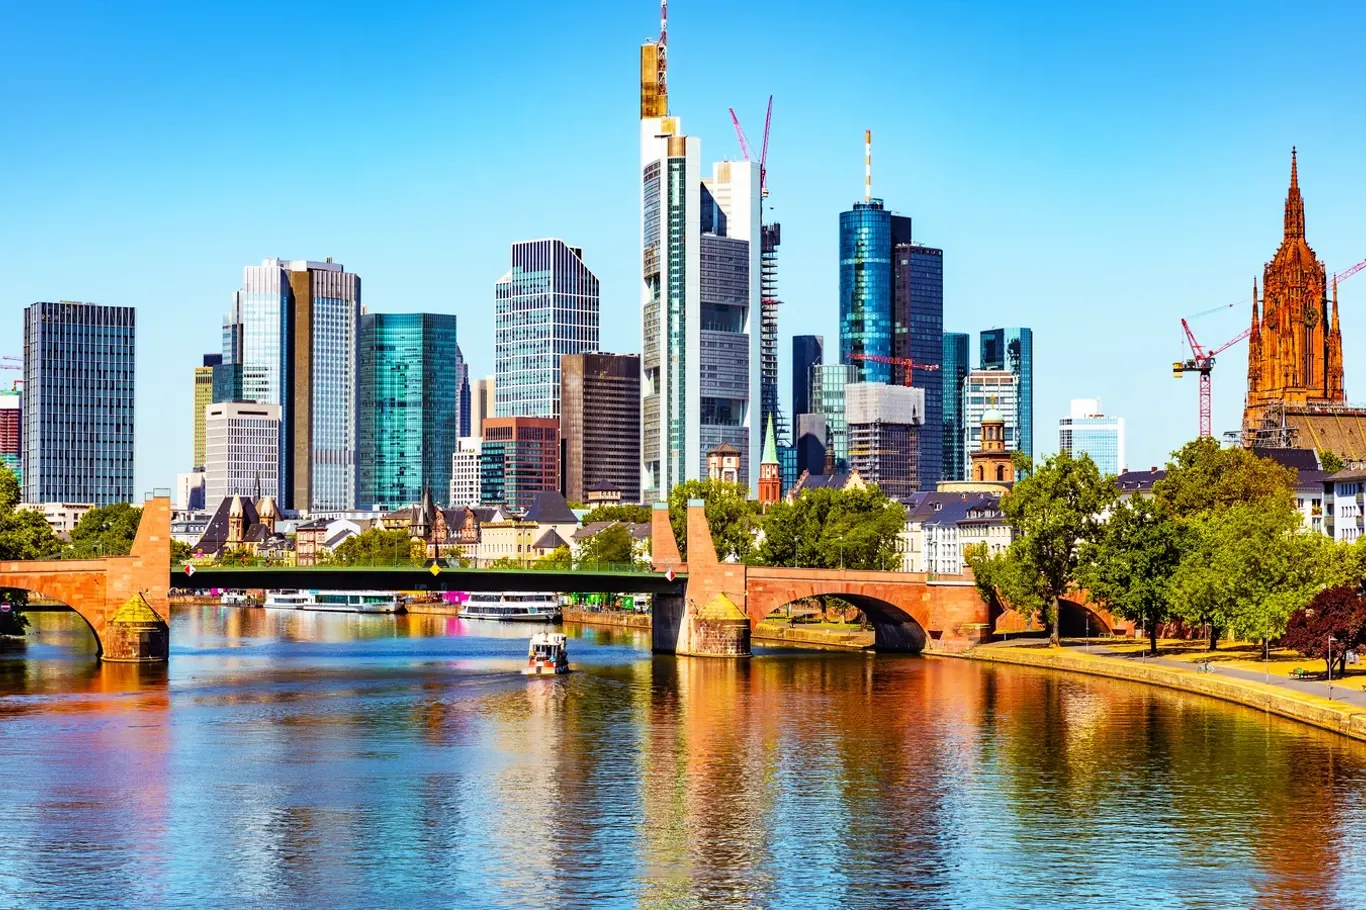 Frankfurt nad Mohanem je největší město německého Hesenska